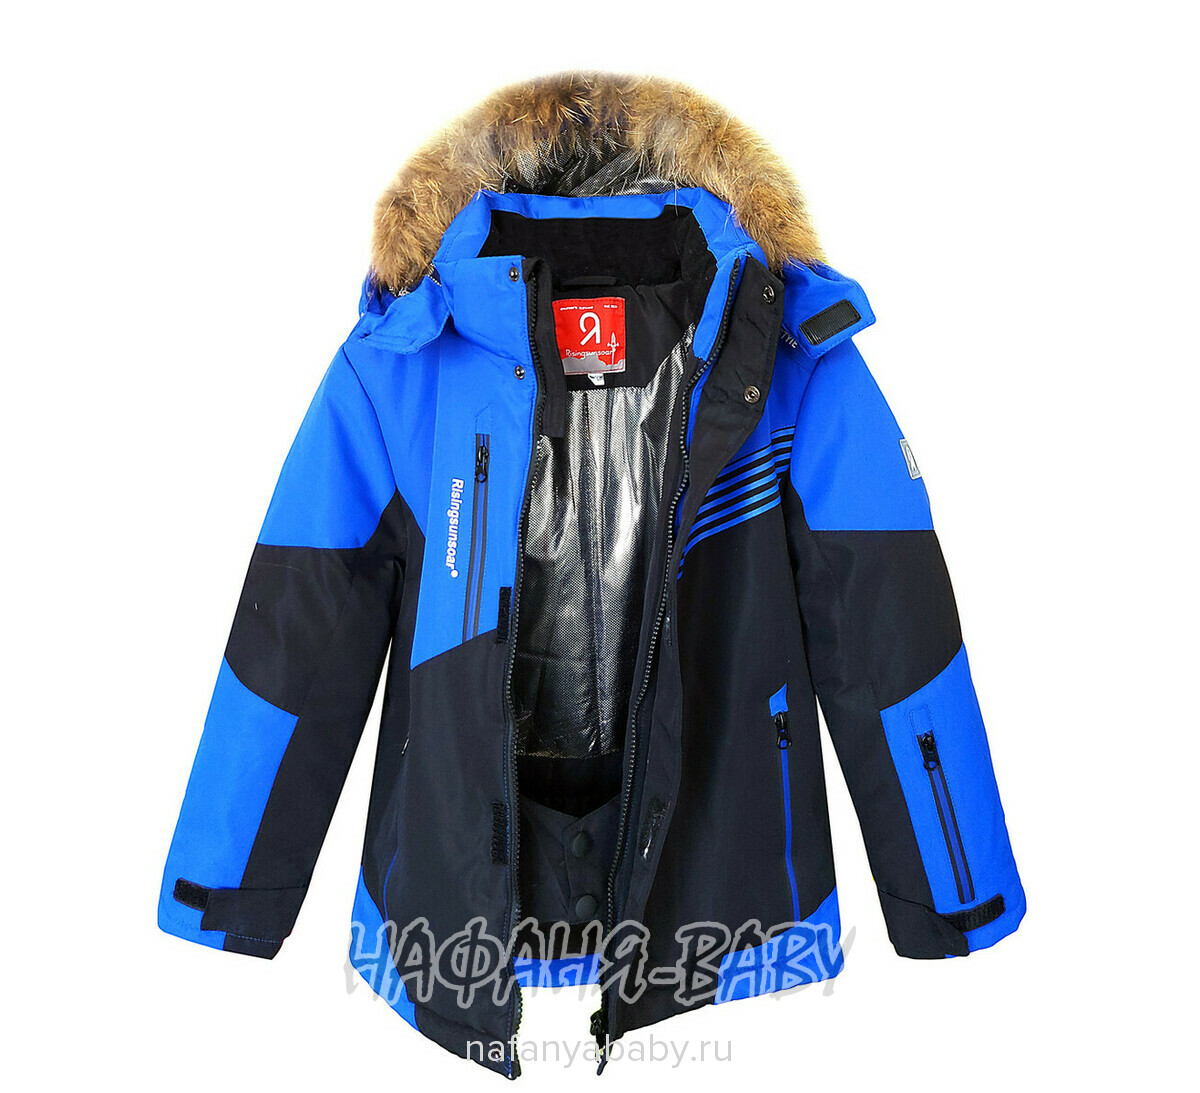 Детский зимний костюм арт.2202, от 7 до 12 лет, оптом Китай (Пекин), цвет синий, оптом Китай (Пекин)